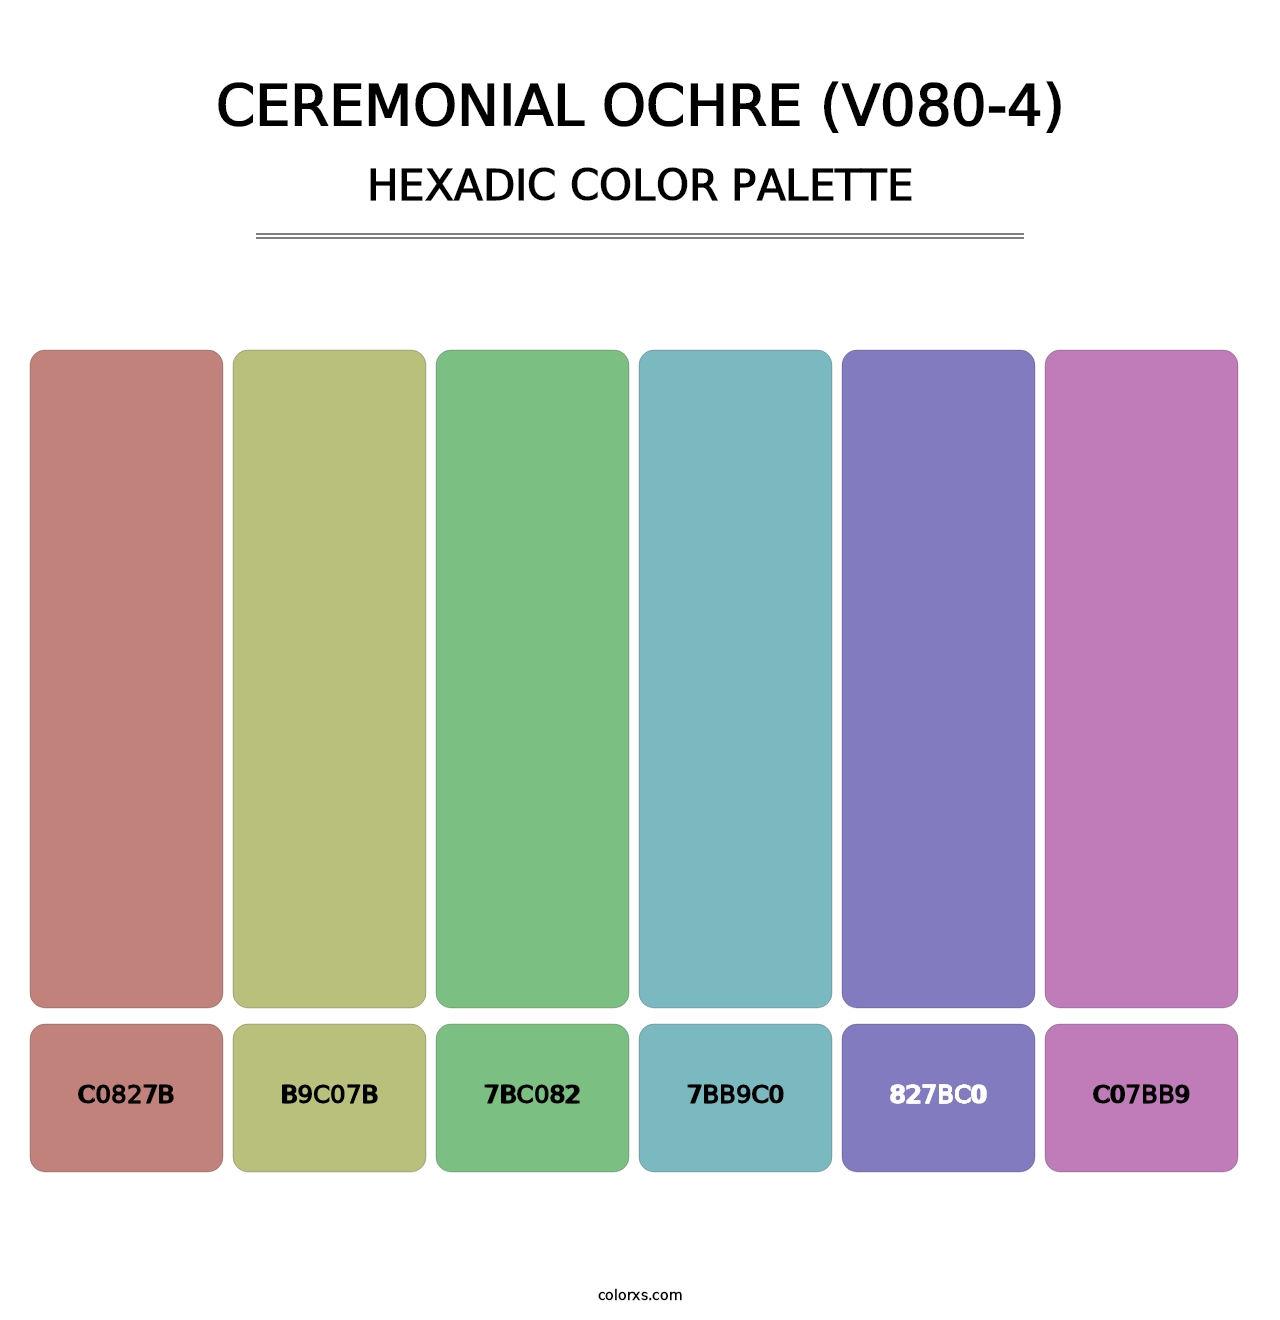 Ceremonial Ochre (V080-4) - Hexadic Color Palette